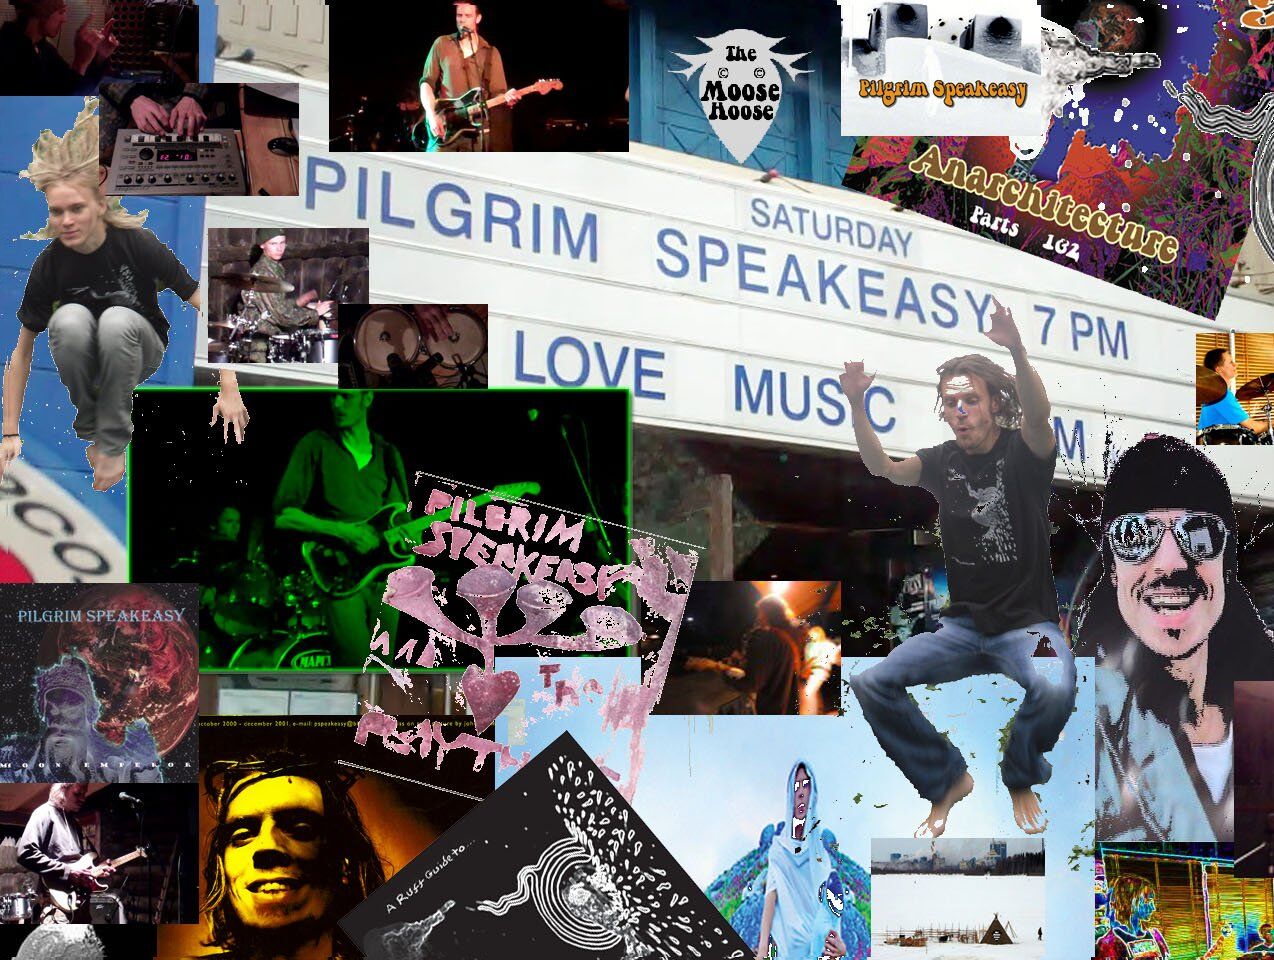 Pilgrim Speakeasy debut their new song “Unbelievable”